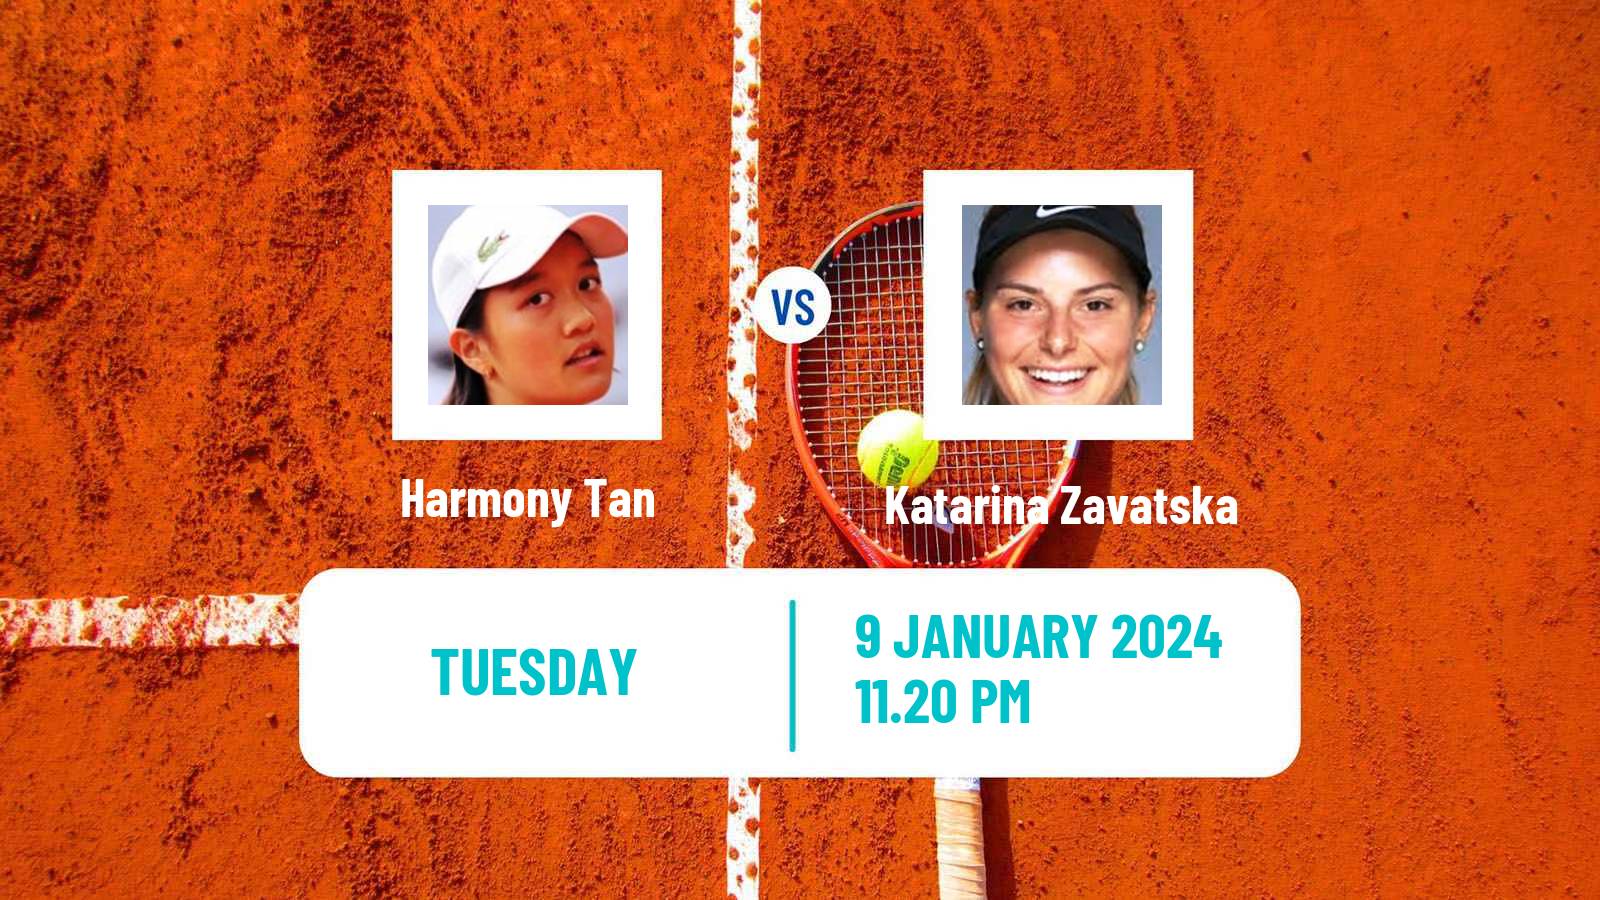 Tennis WTA Australian Open Harmony Tan - Katarina Zavatska